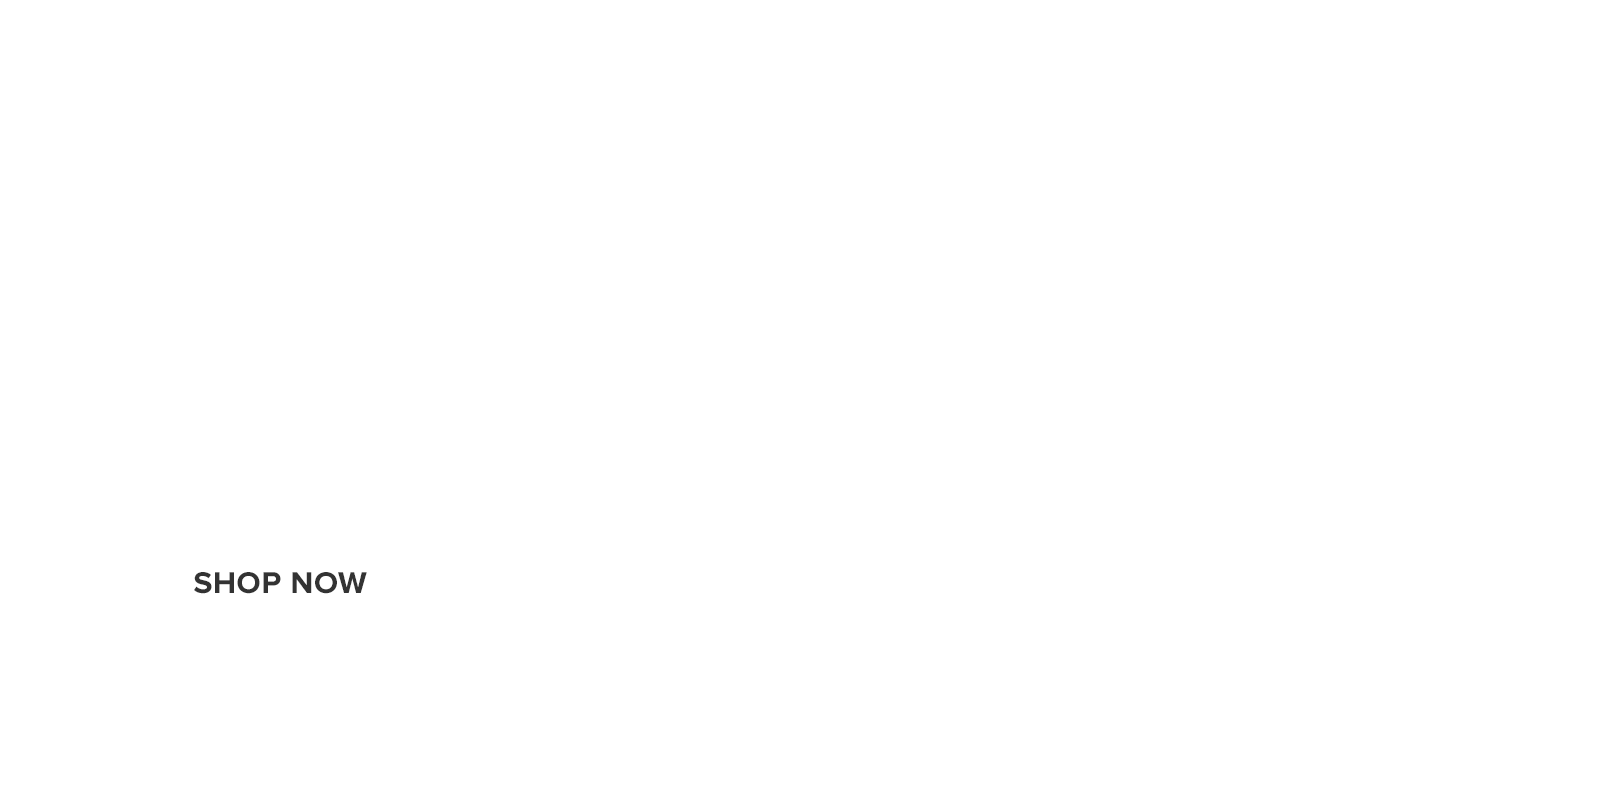 25% off meditation with code dotdzen